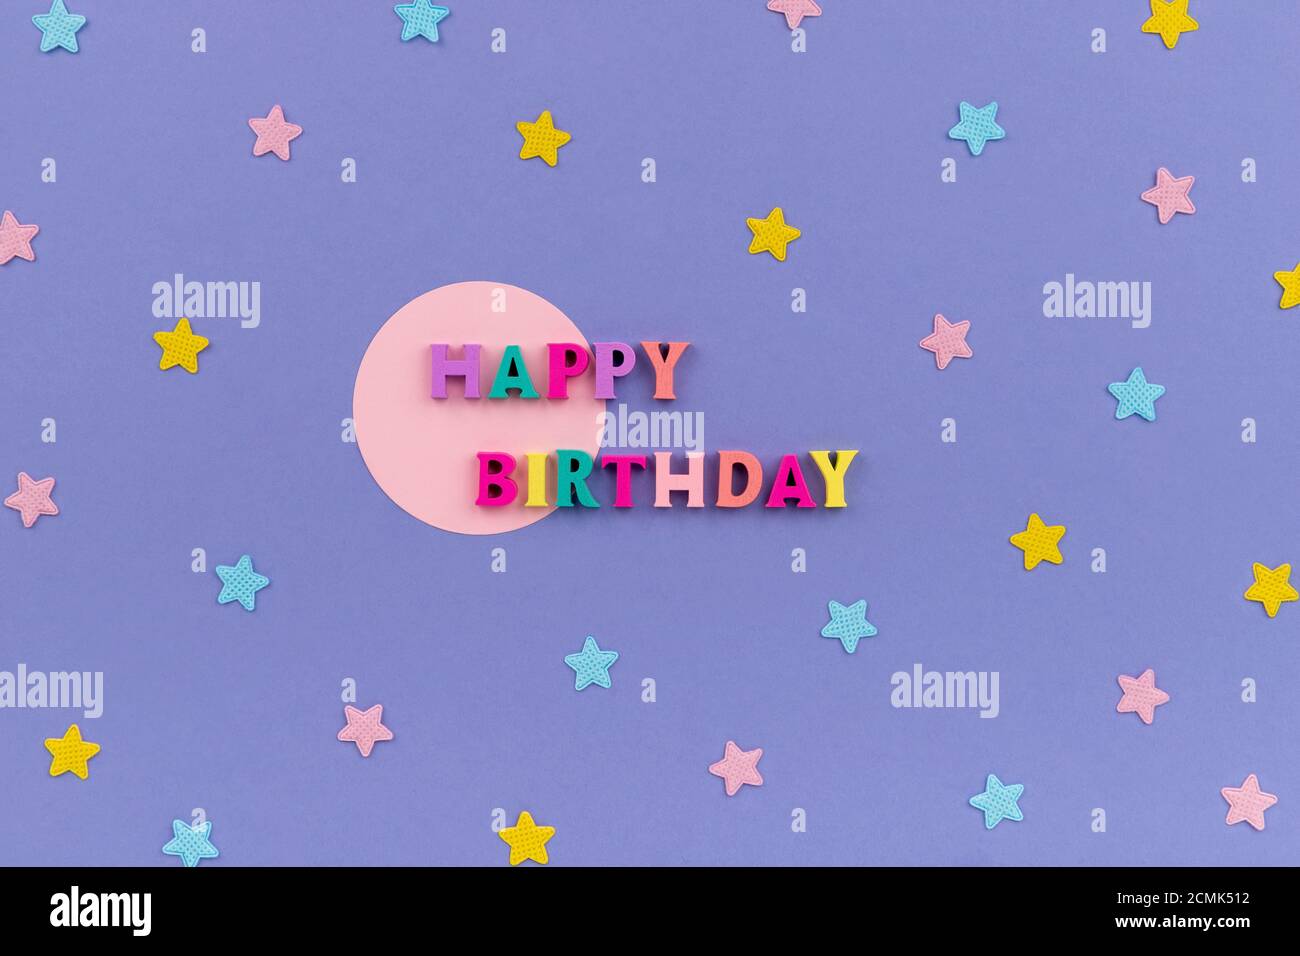 Birthday poster immagini e fotografie stock ad alta risoluzione - Alamy